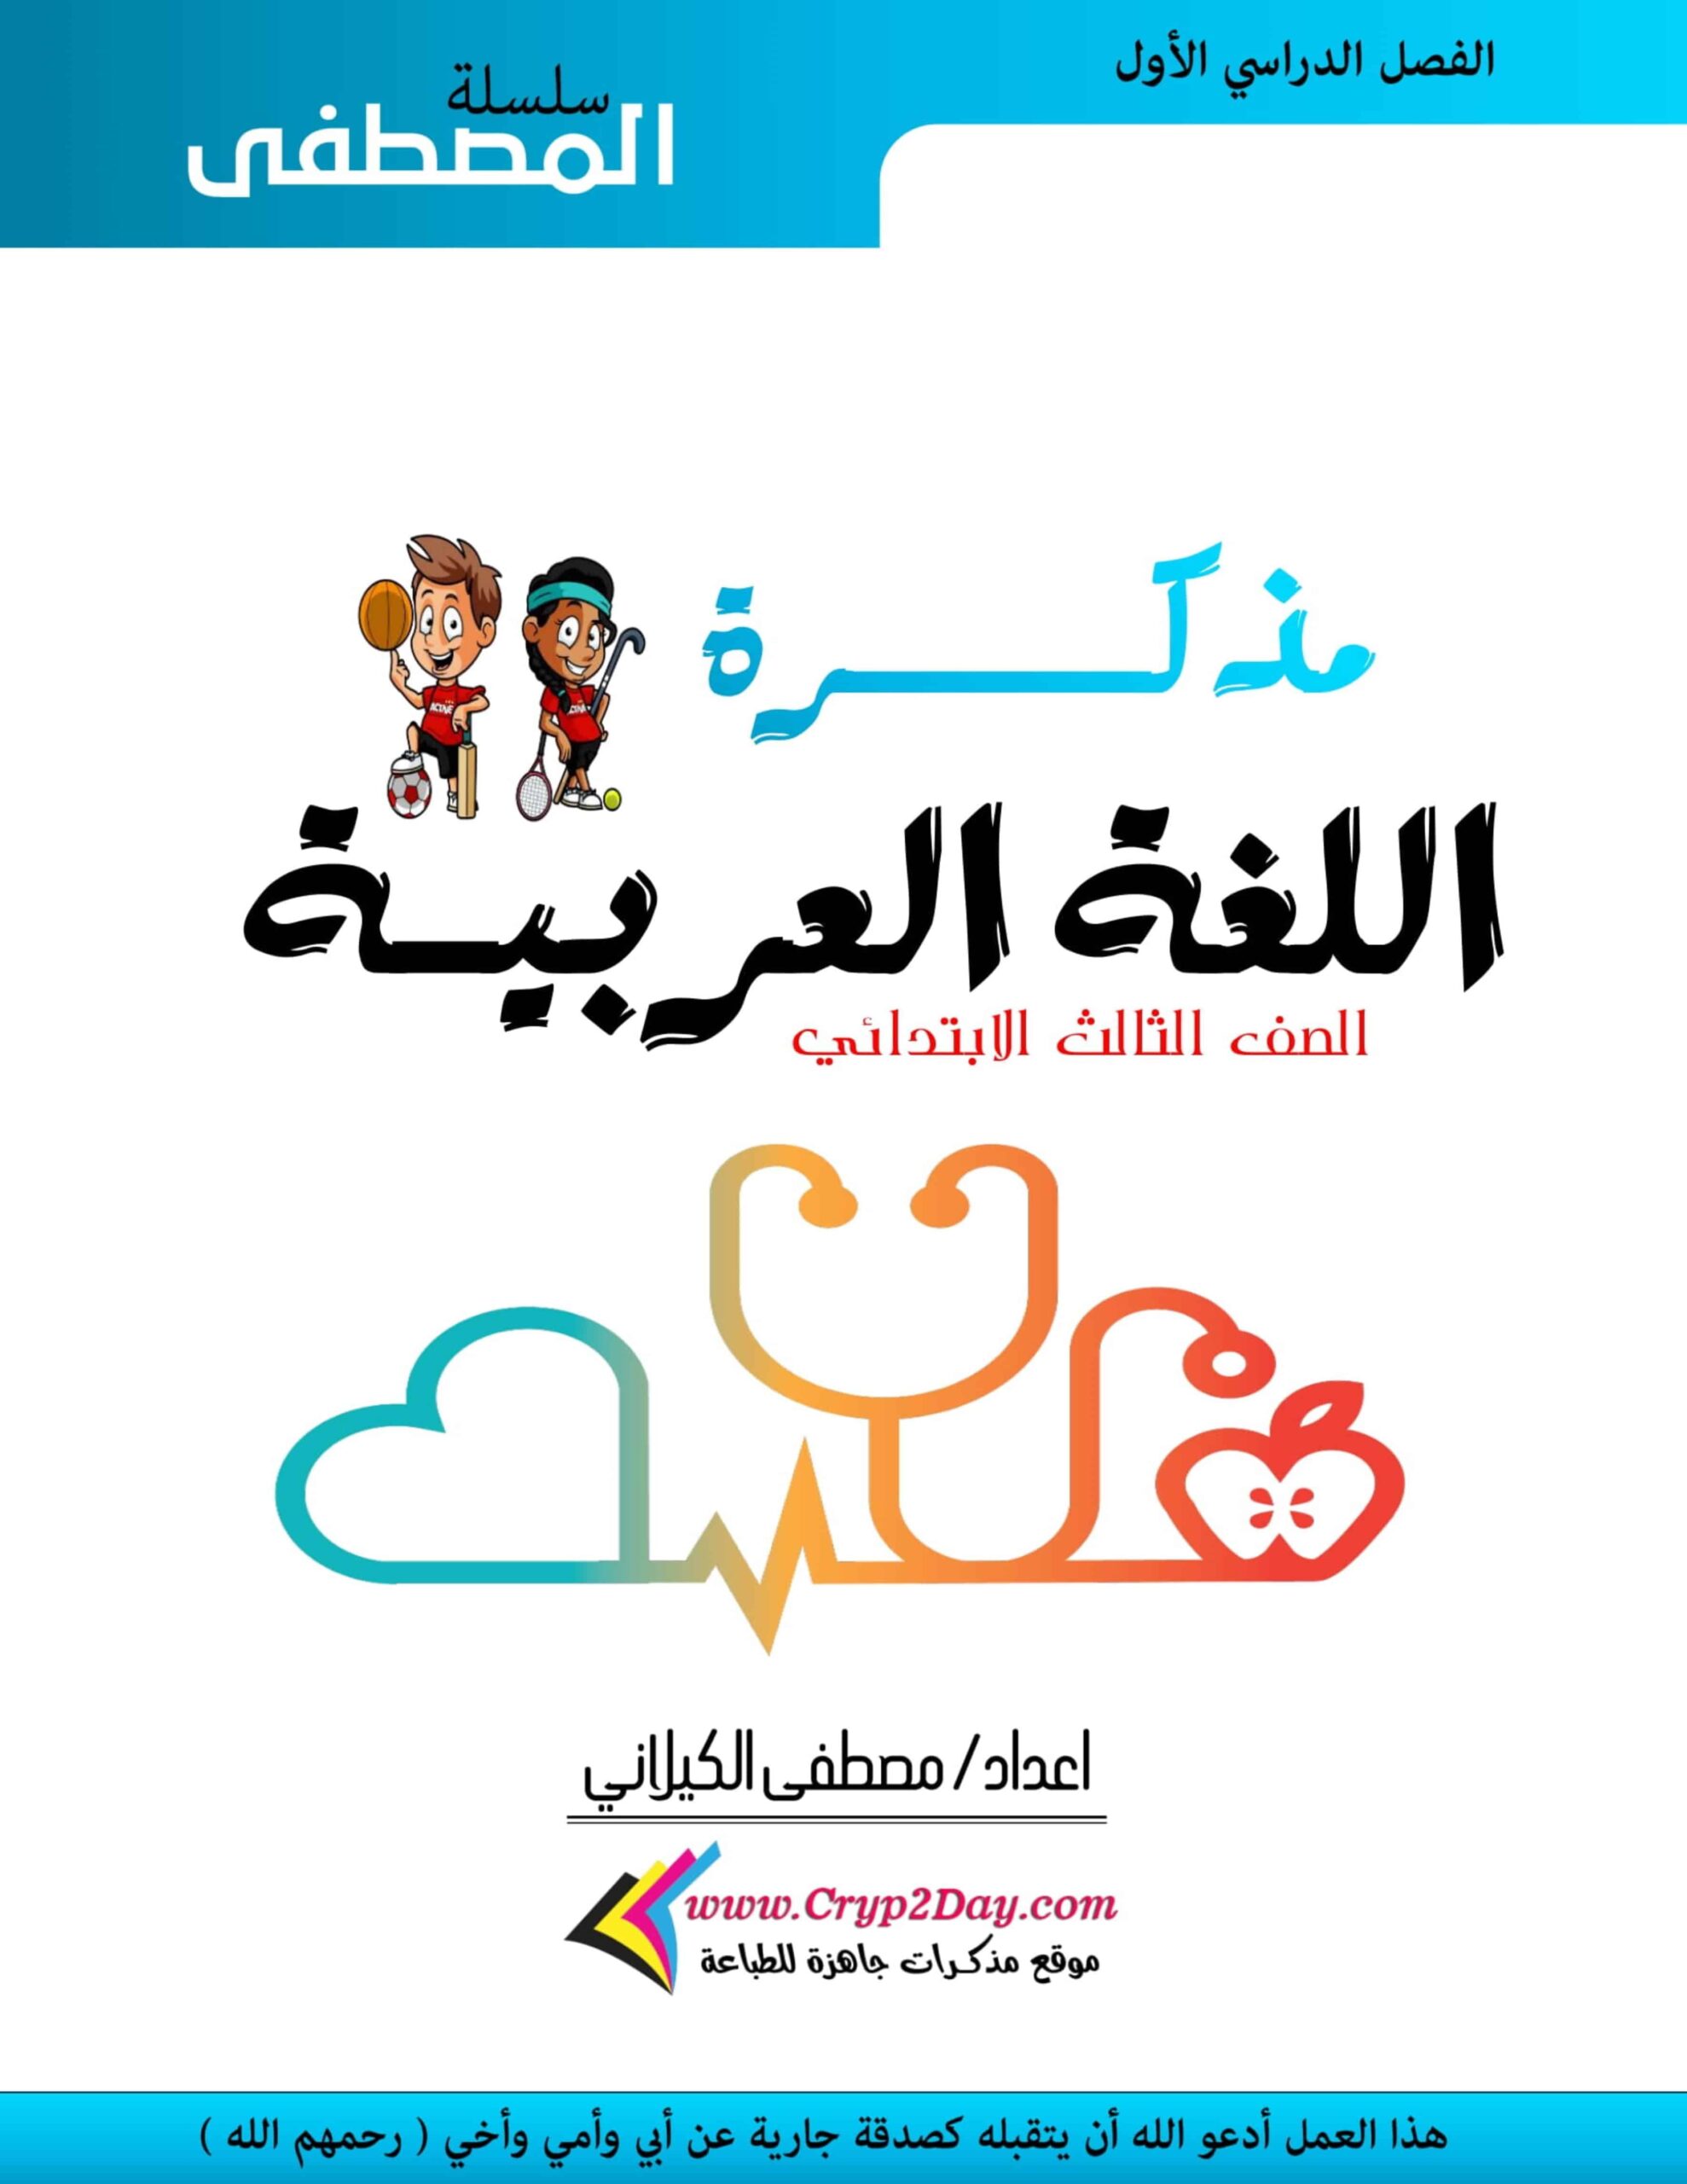 مذكرة عامة اللغة العربية الصف الثالث الفصل الدراسي الأول